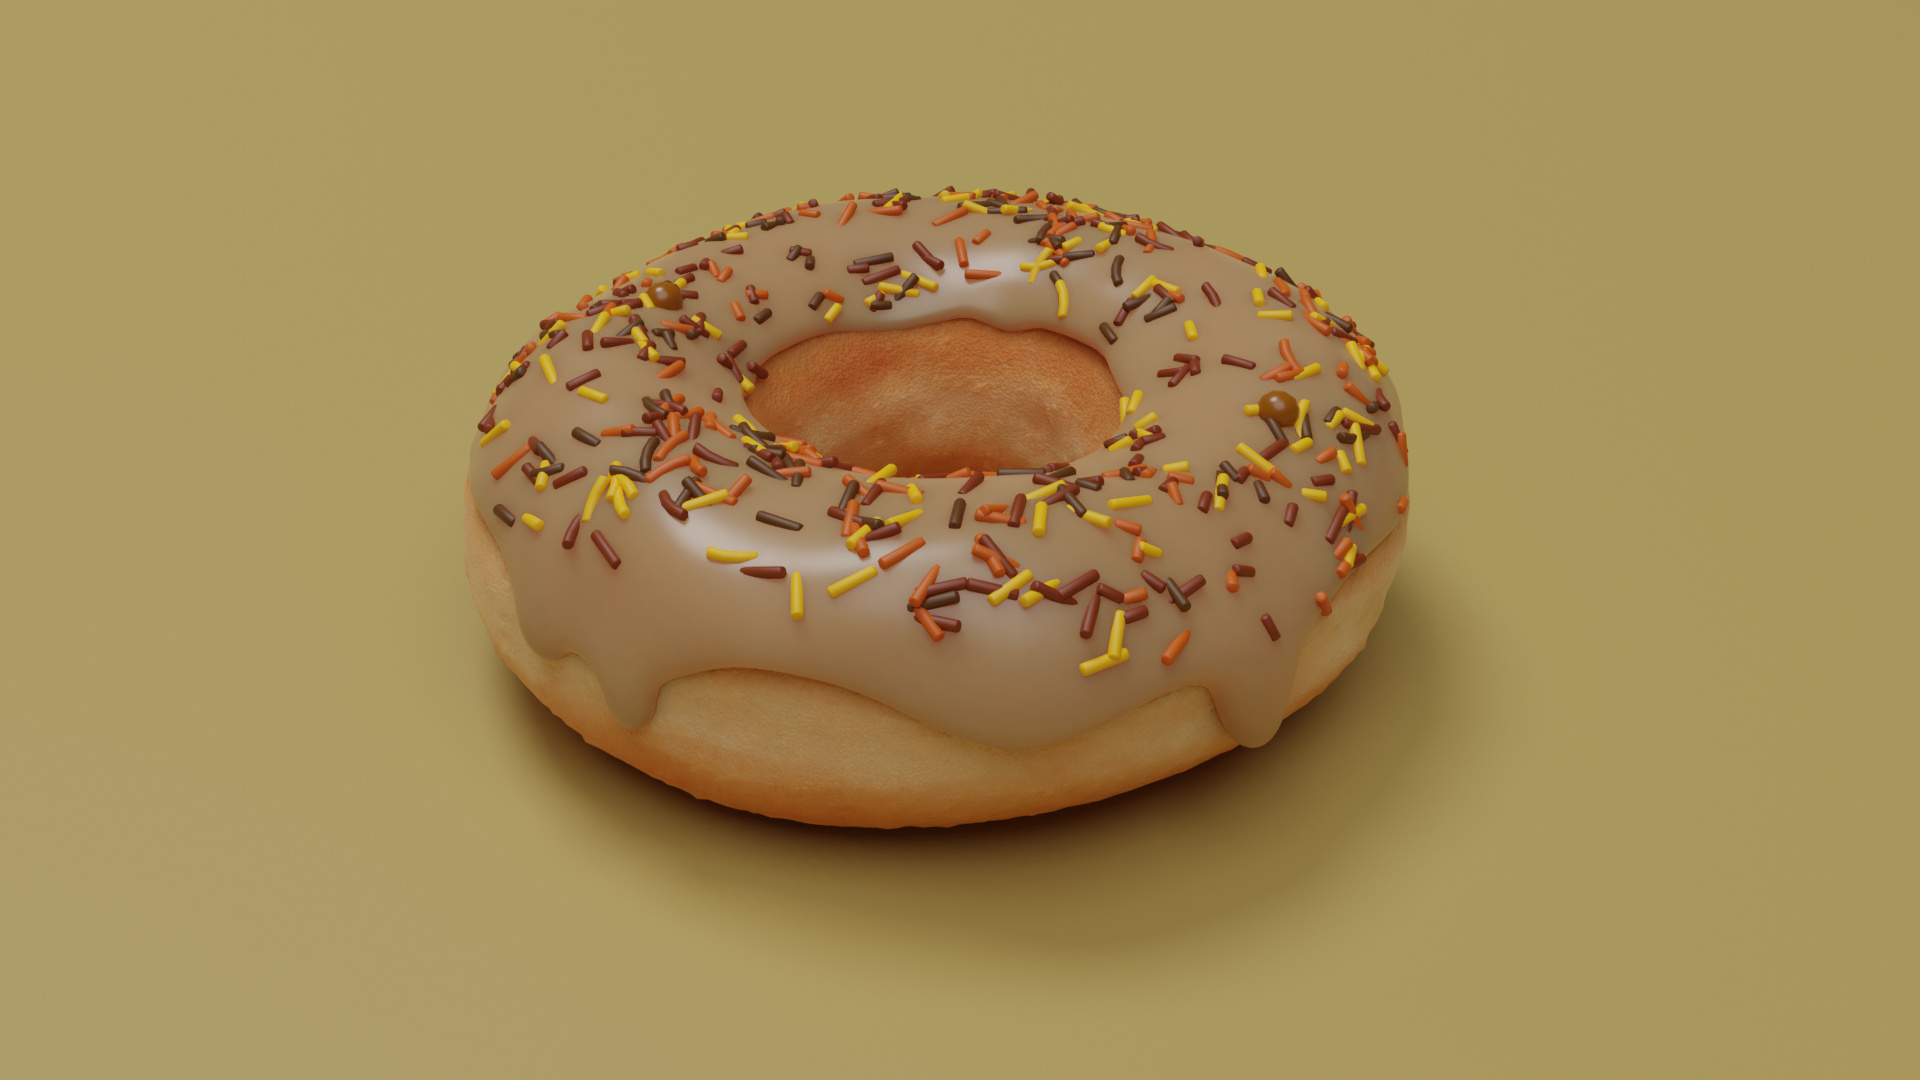 blender glazed donut texture